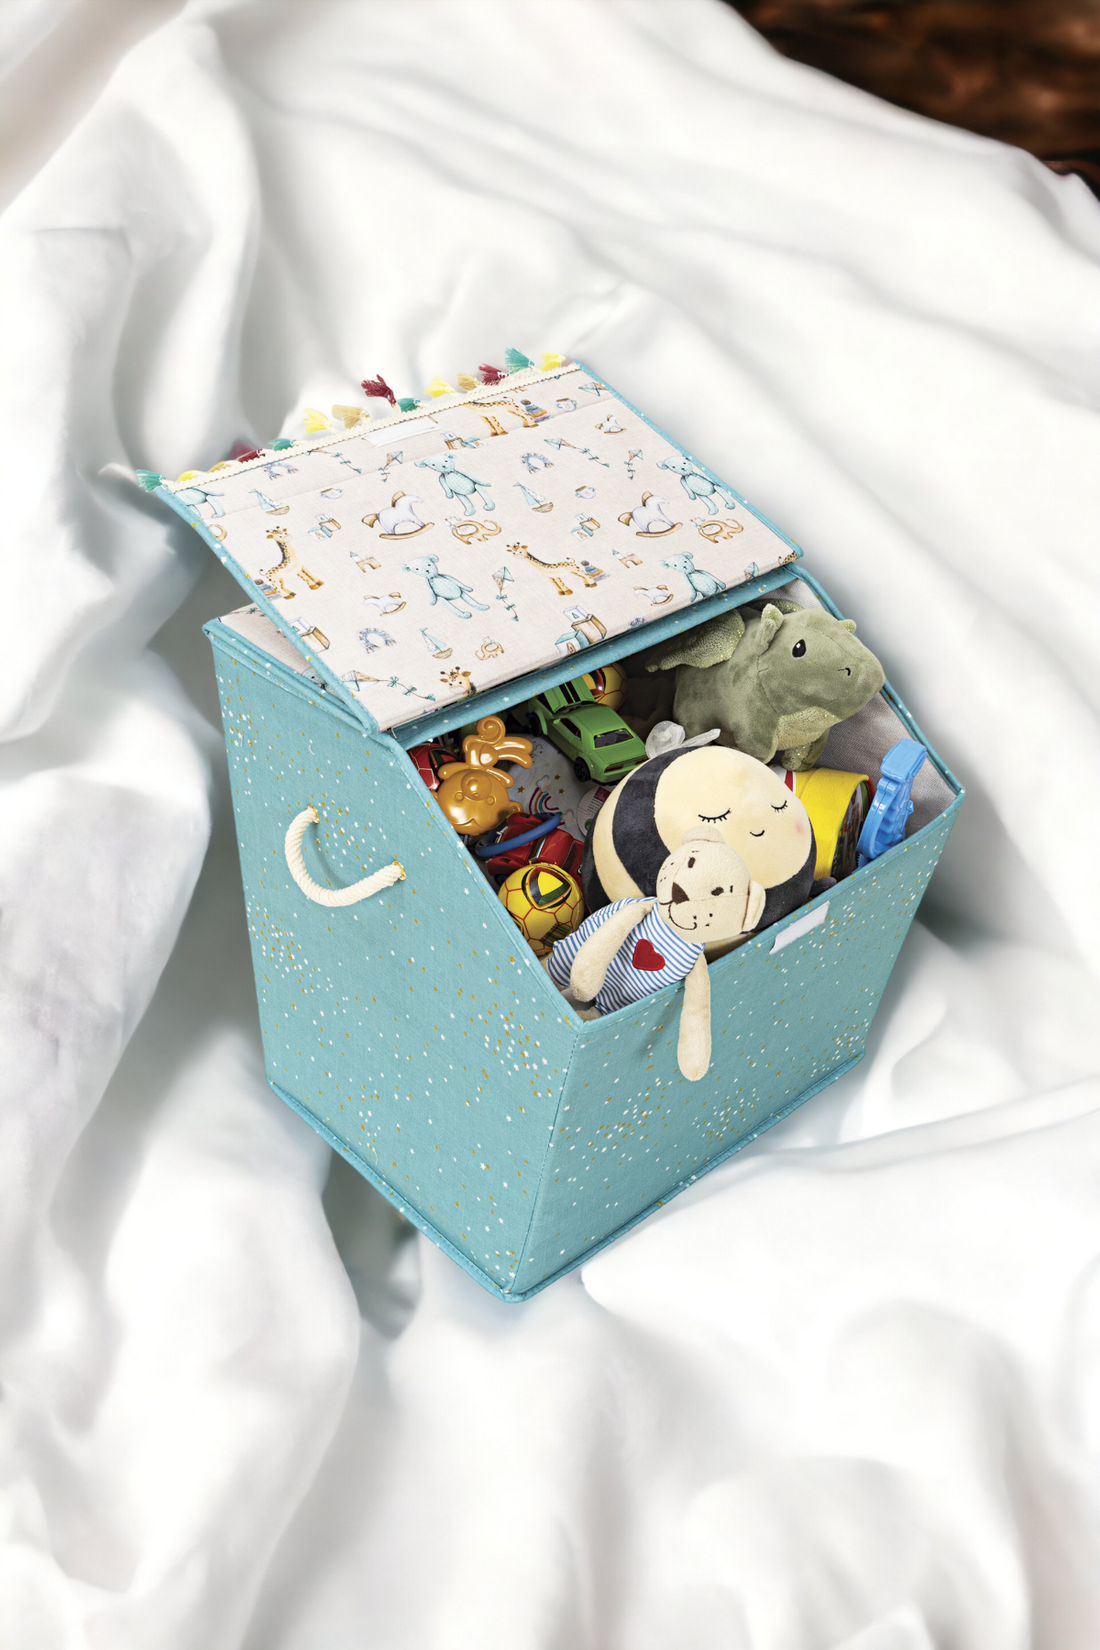 Anne Bebek Kapaklı Saklama Kutusu, Bebek Odası Düzenleyici, 40x38x44cm, Mavi Renk